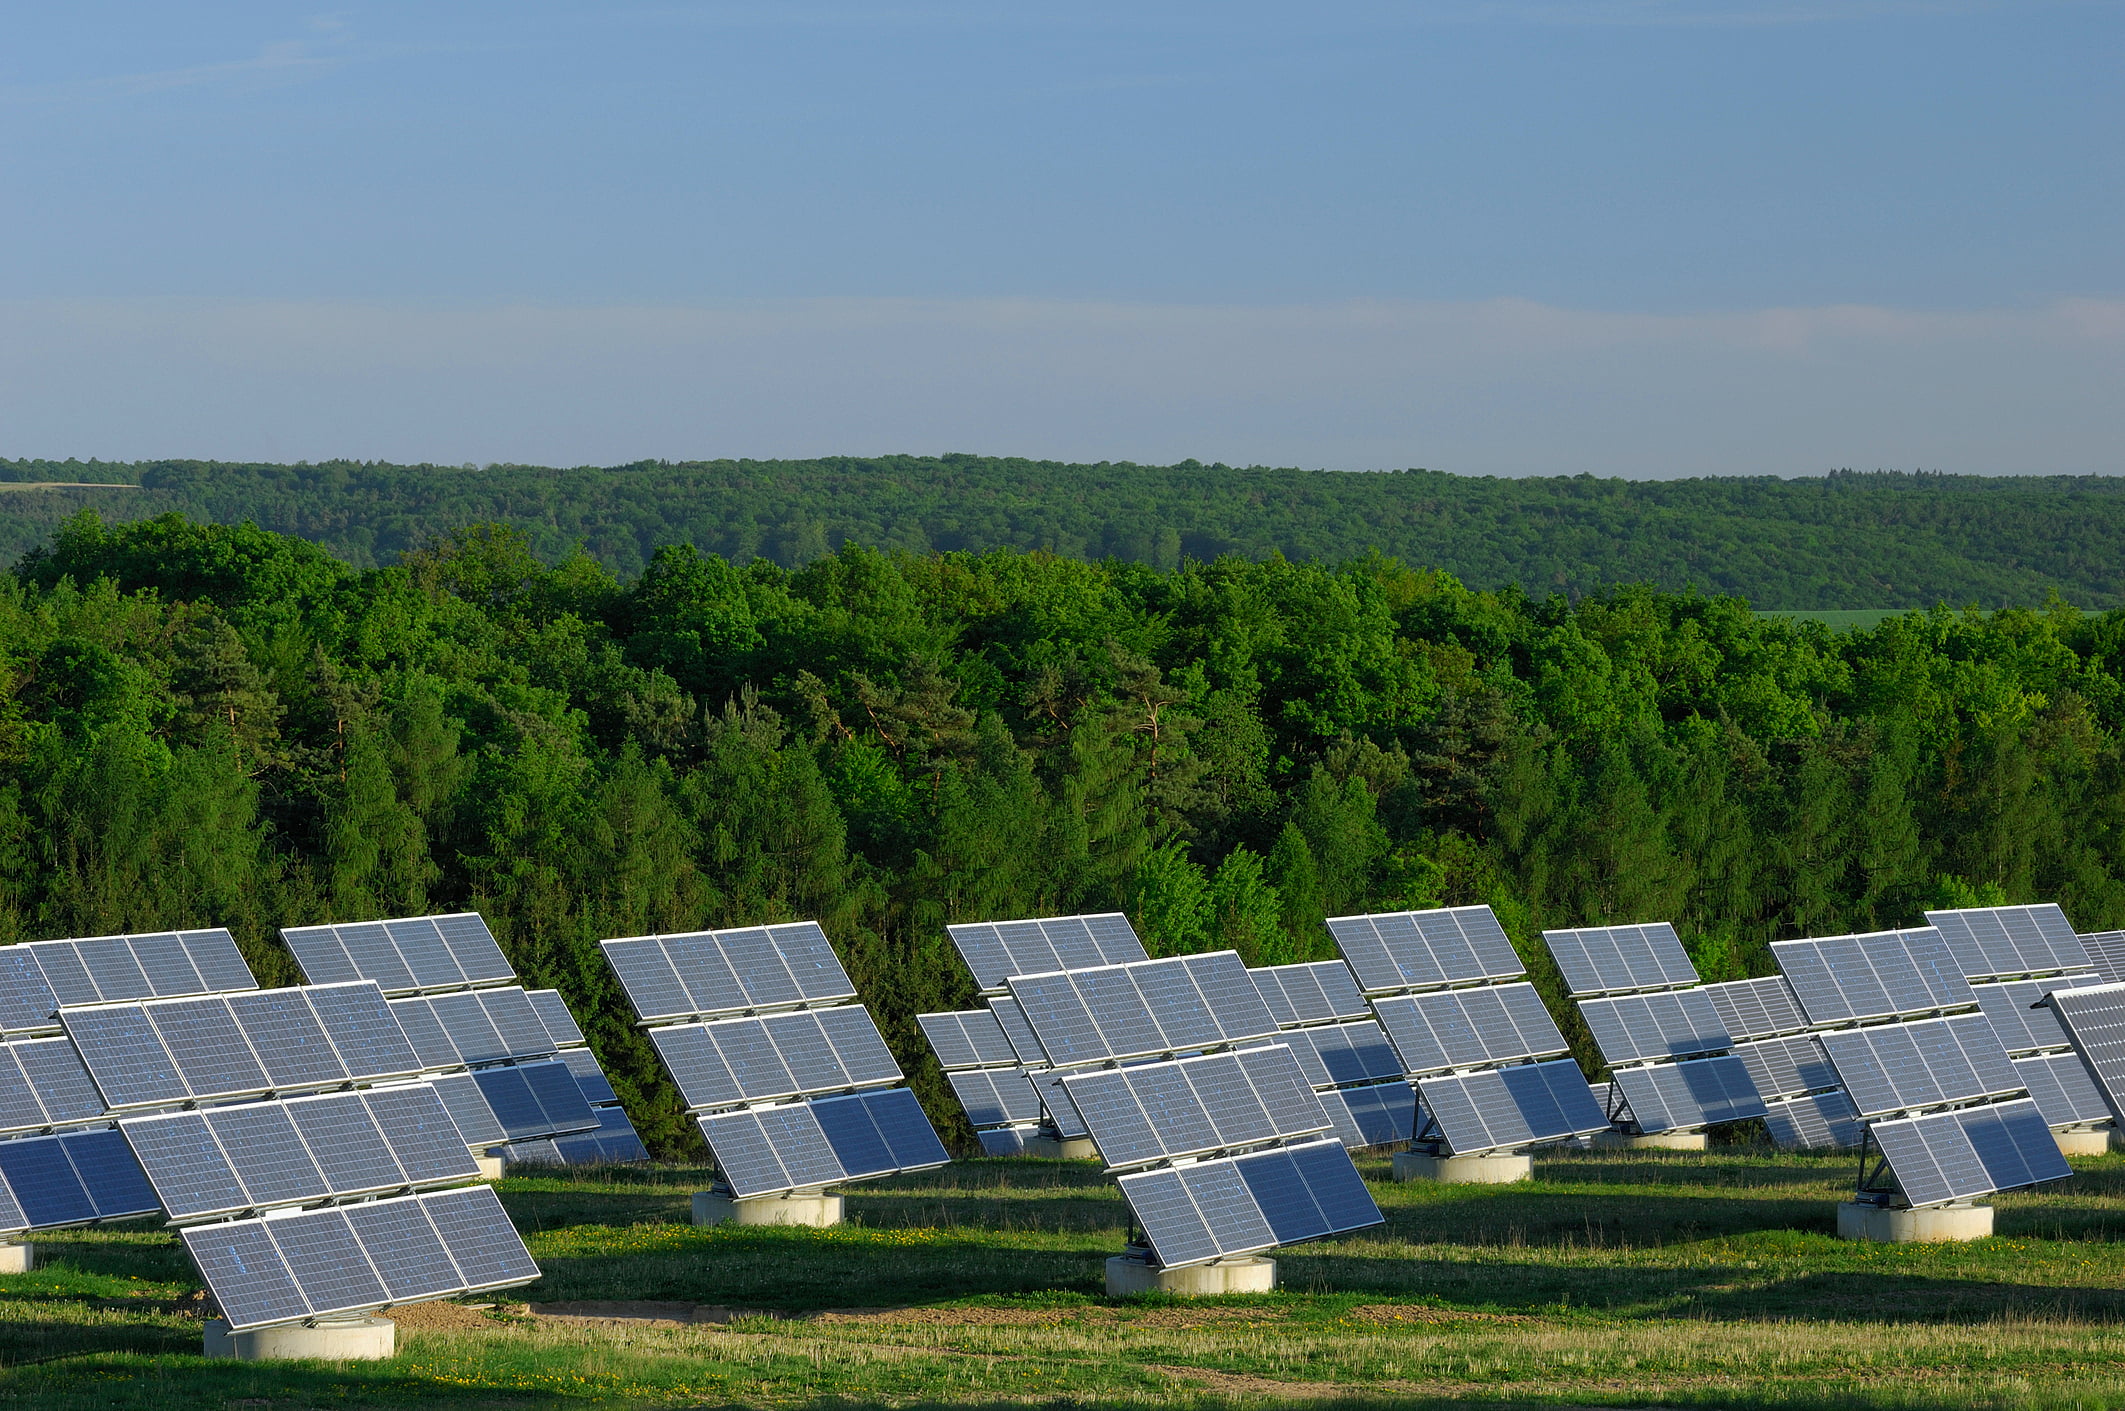 Usina solar com diversos painéis fotovoltaicos instalados no solo